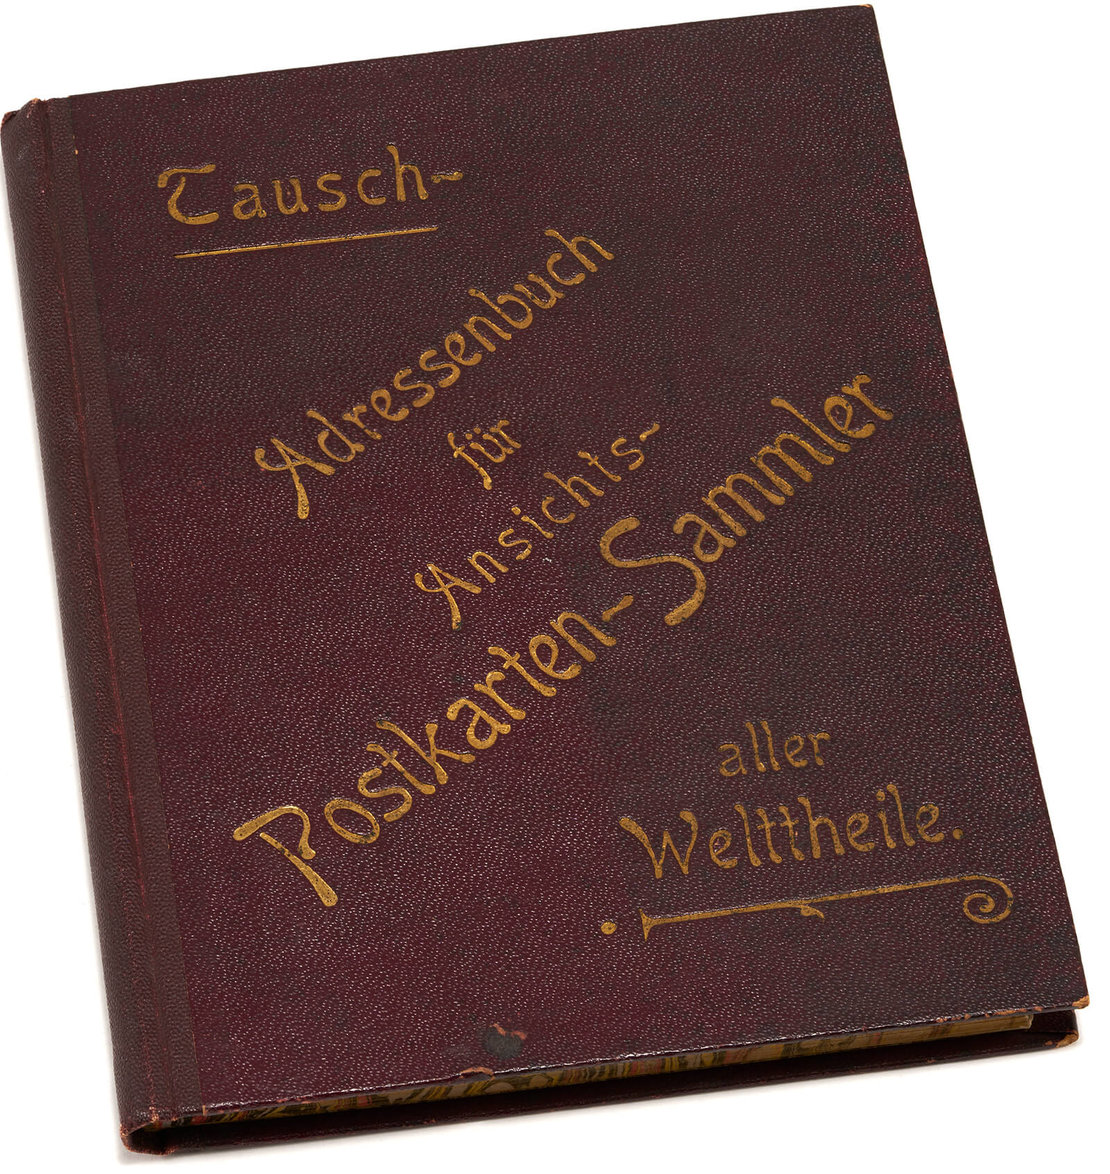 Internationales Tausch-Adressenbuch für AnsichtskartensammlerInnen vom Verlag Zadra in Salzburg, 1898, Sammlung Lukan, Wien 